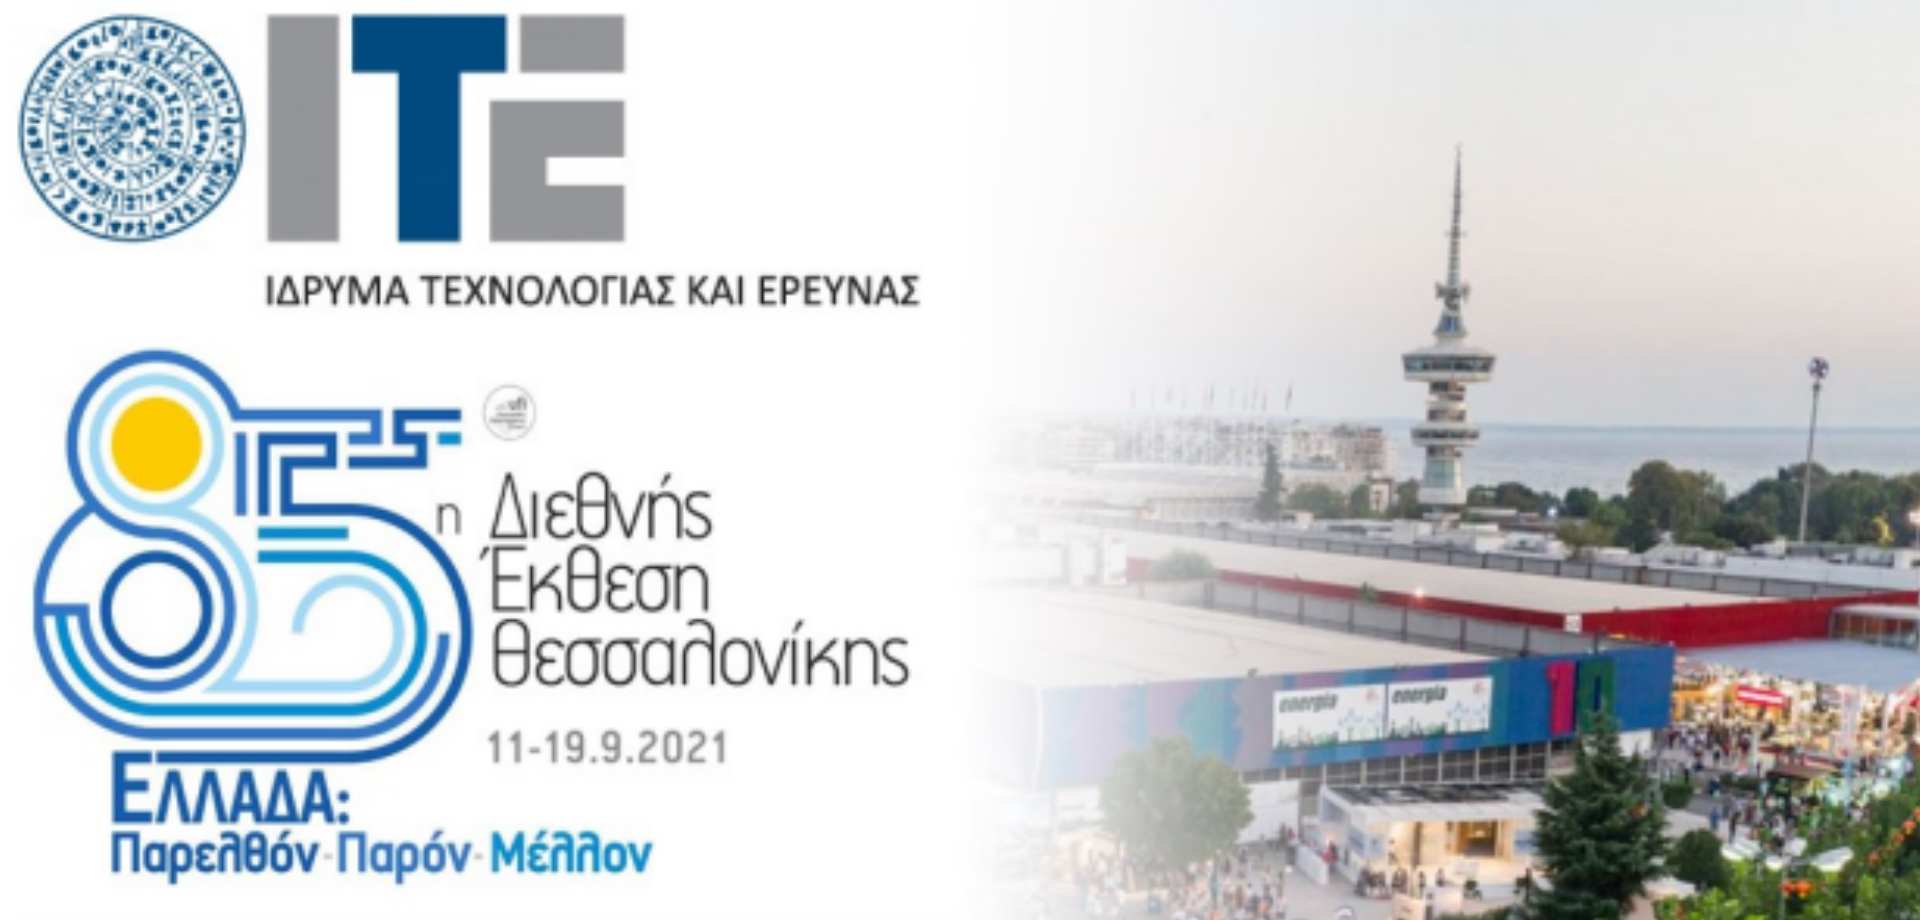 Το Ίδρυμα Τεχνολογίας και Έρευνας στην 85η Διεθνή Έκθεση Θεσσαλονίκης